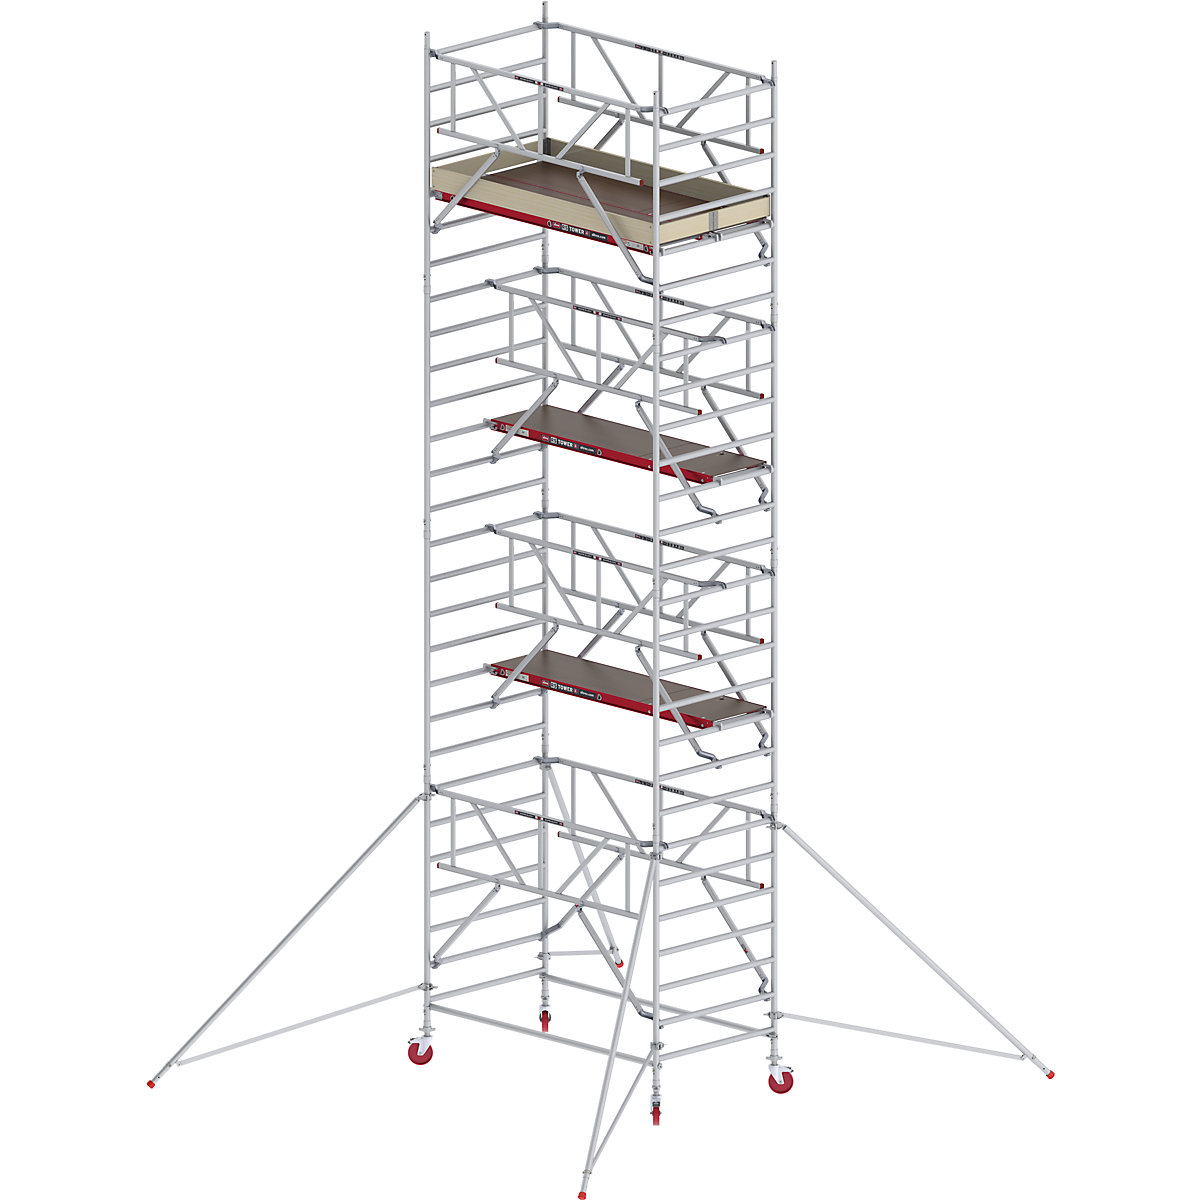 RS TOWER 42 széles mobil állvány Safe-Quick® rendszerrel – Altrex, fadobogó, hossza 1,85 m, munkamagasság 9,20 m-7